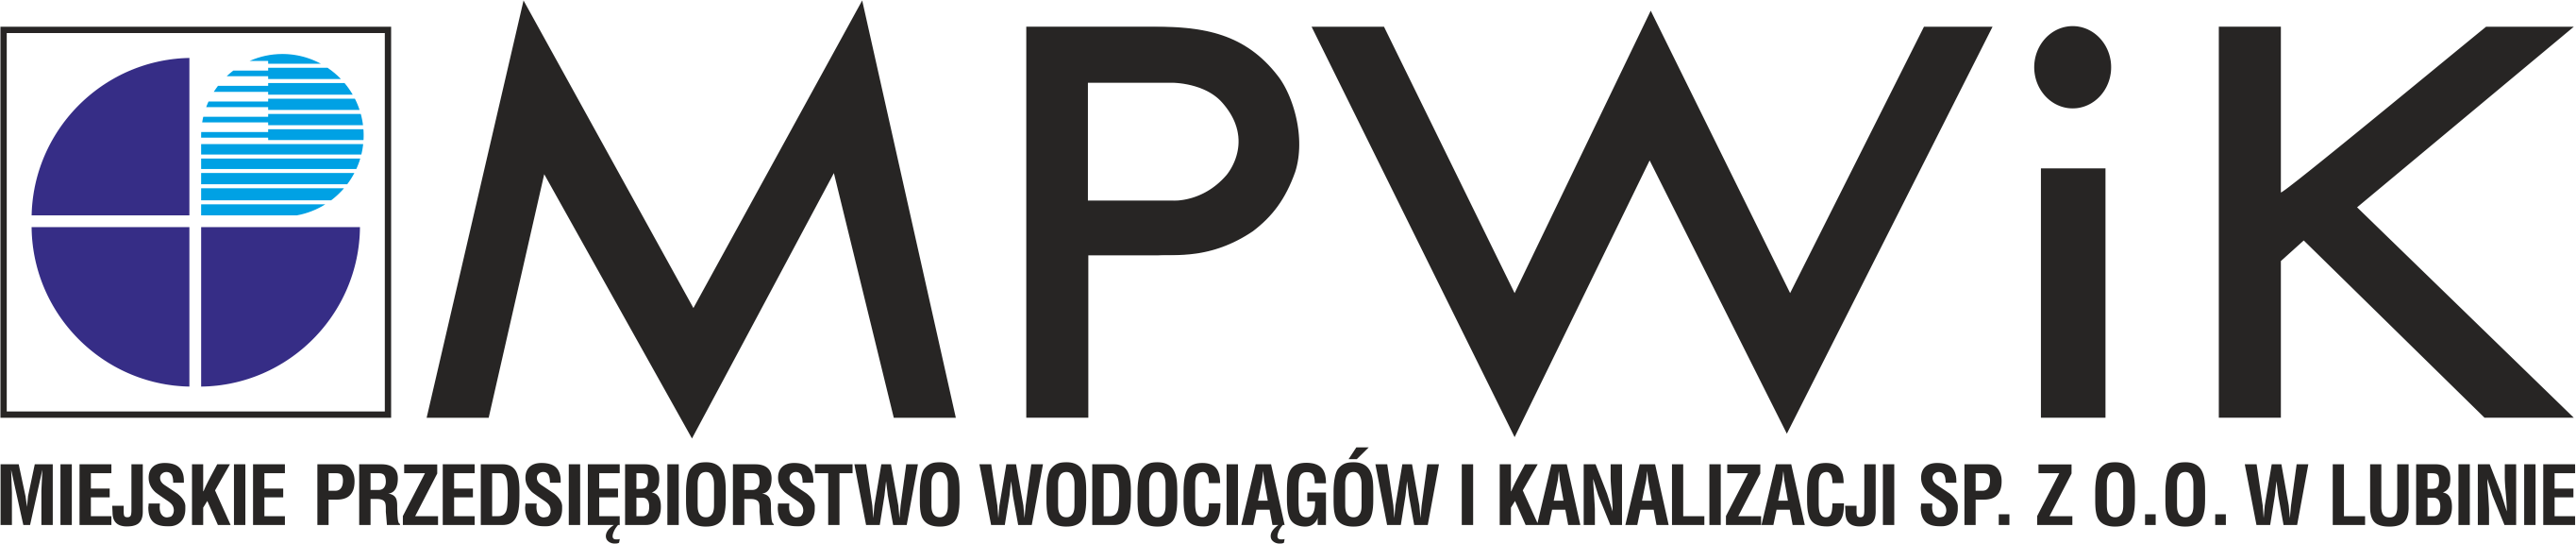 Miejskie Przedsiębiorstwo Wodociągów i Kanalizacji w Lubinie_logo